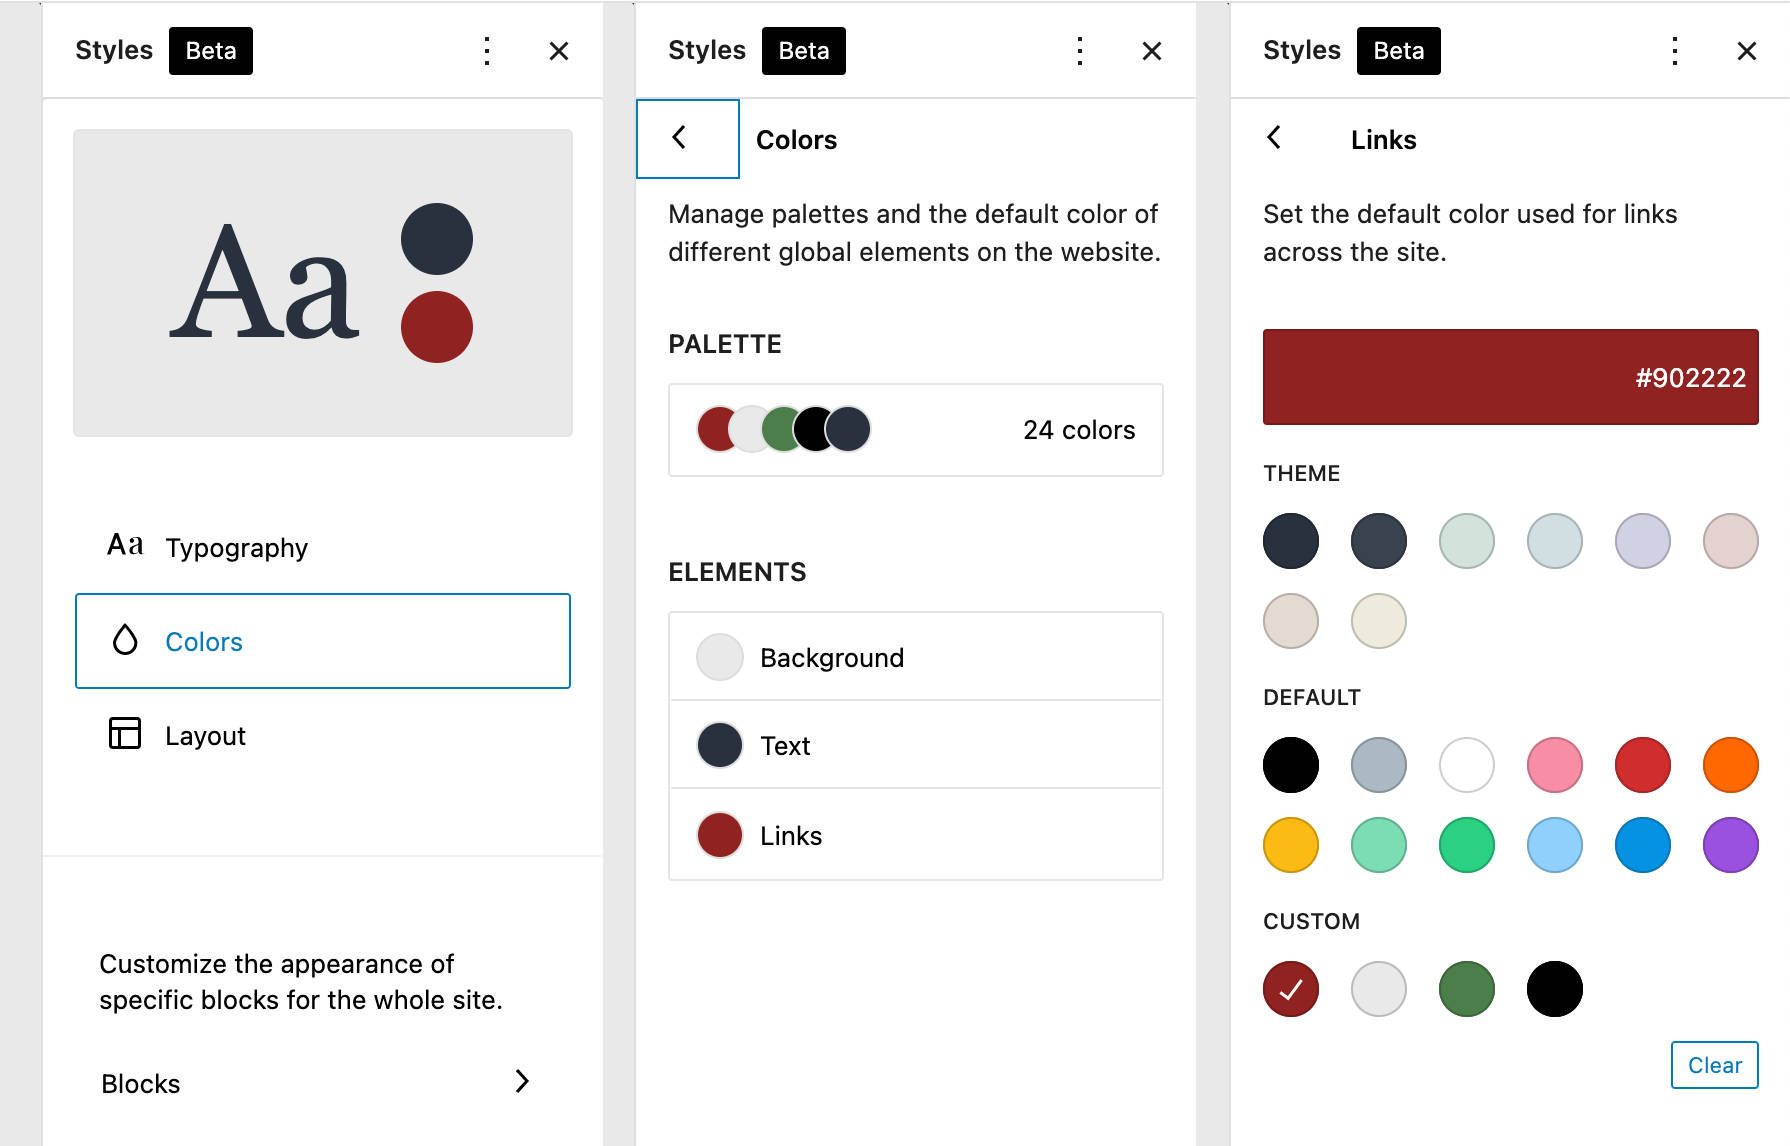 Impostazioni colore in TT1 Blocks, che mostra vari cerchi di colore per tre opzioni di palette separate: Theme, Default, e Custom.